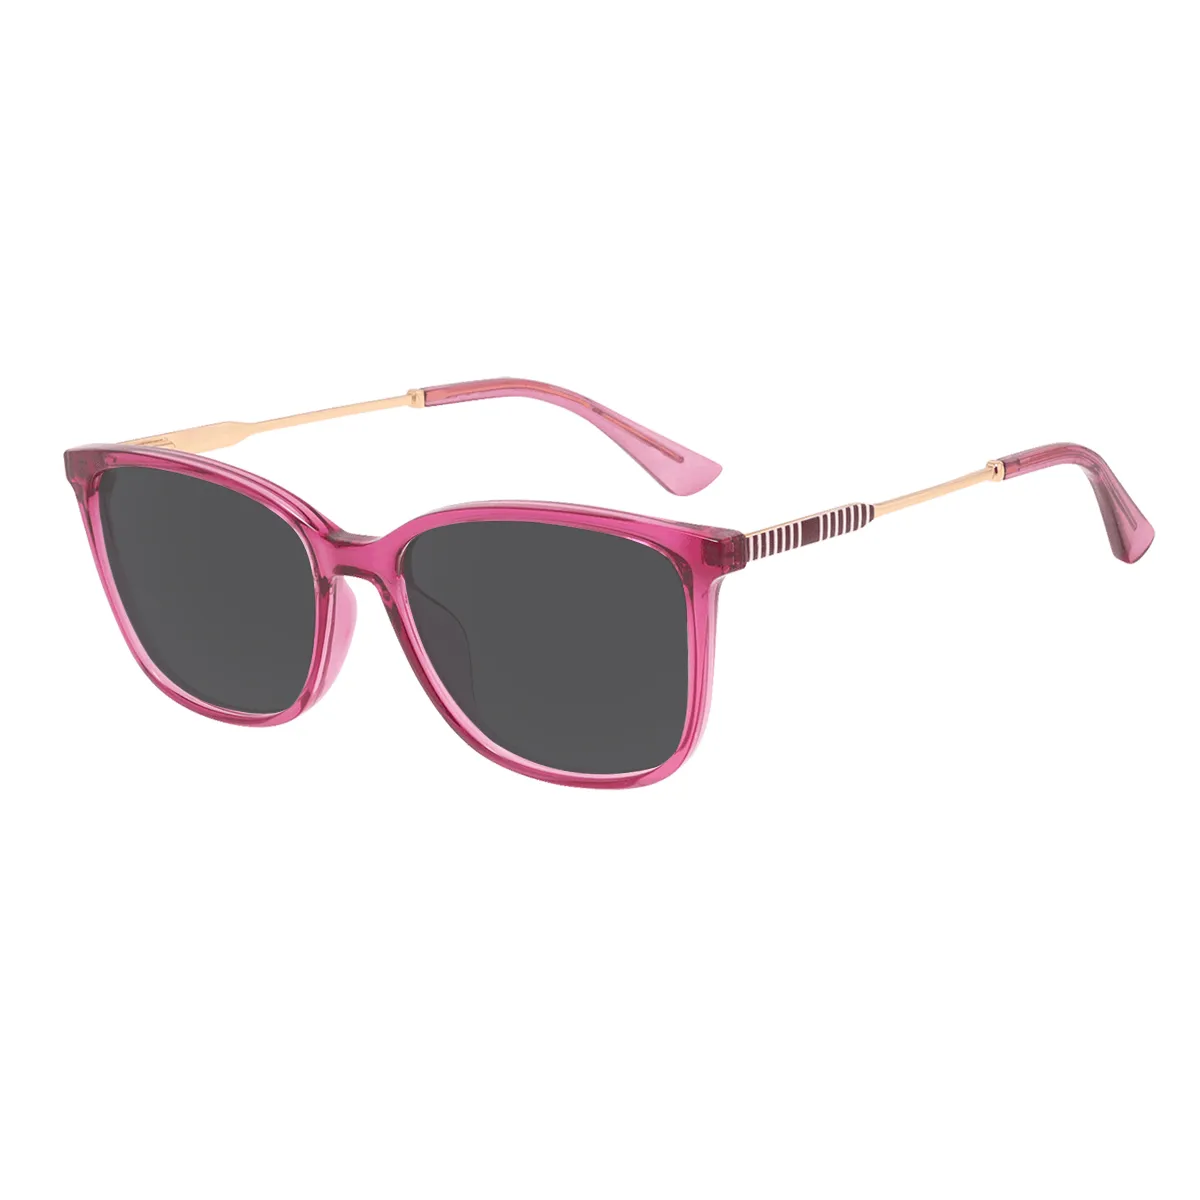 Adcock - Square Purple Sunglasses for Men & Women